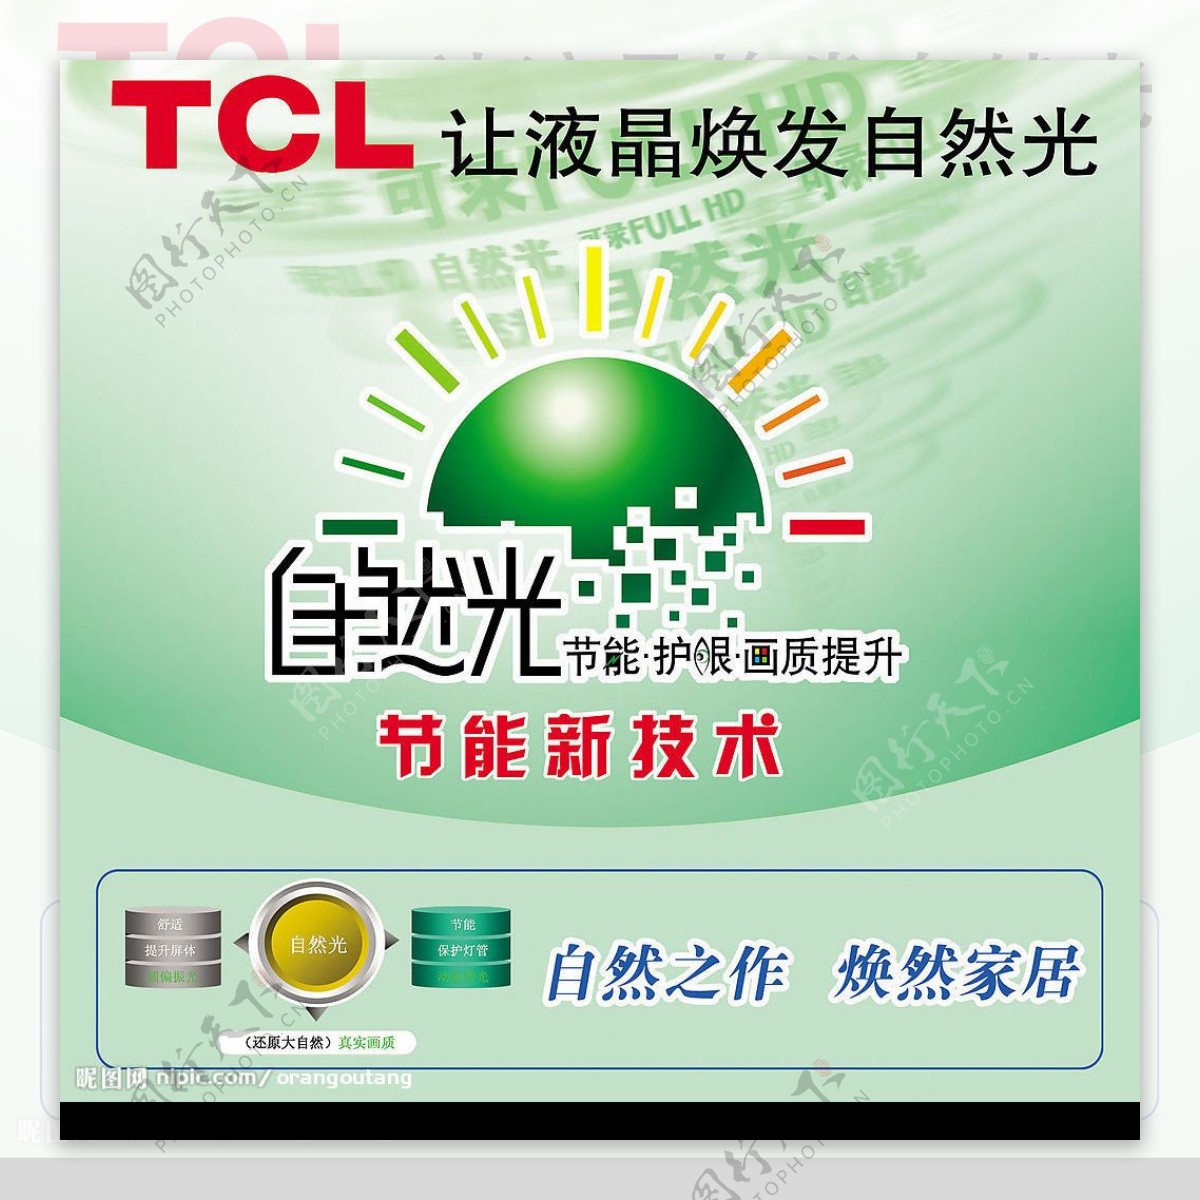 TCL彩电自然光系列图片